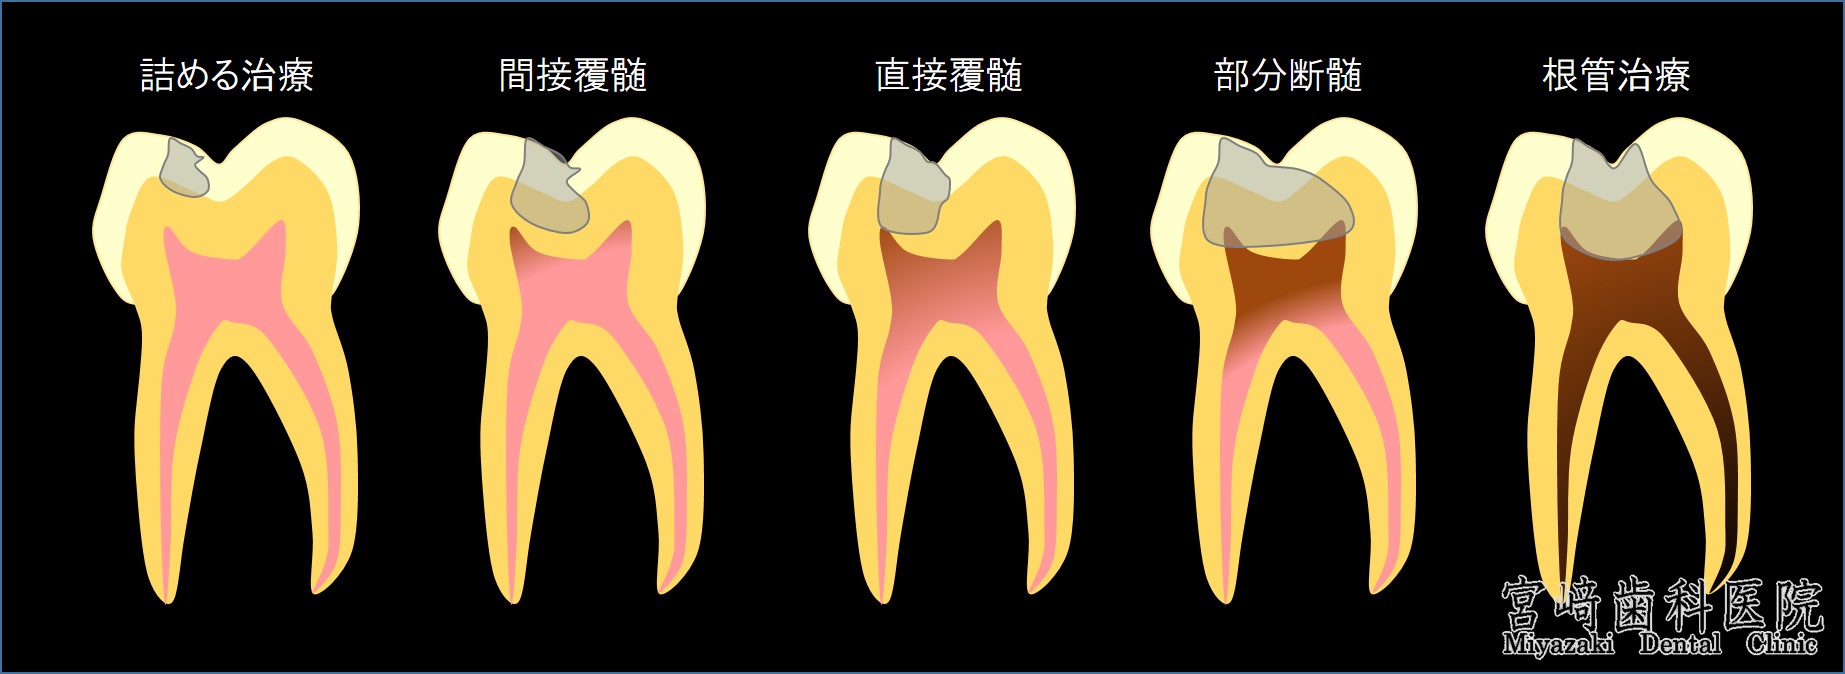 間接覆髄法　直接覆髄法　部分断髄法　根管治療　のむし歯の進行度合いを図で説明